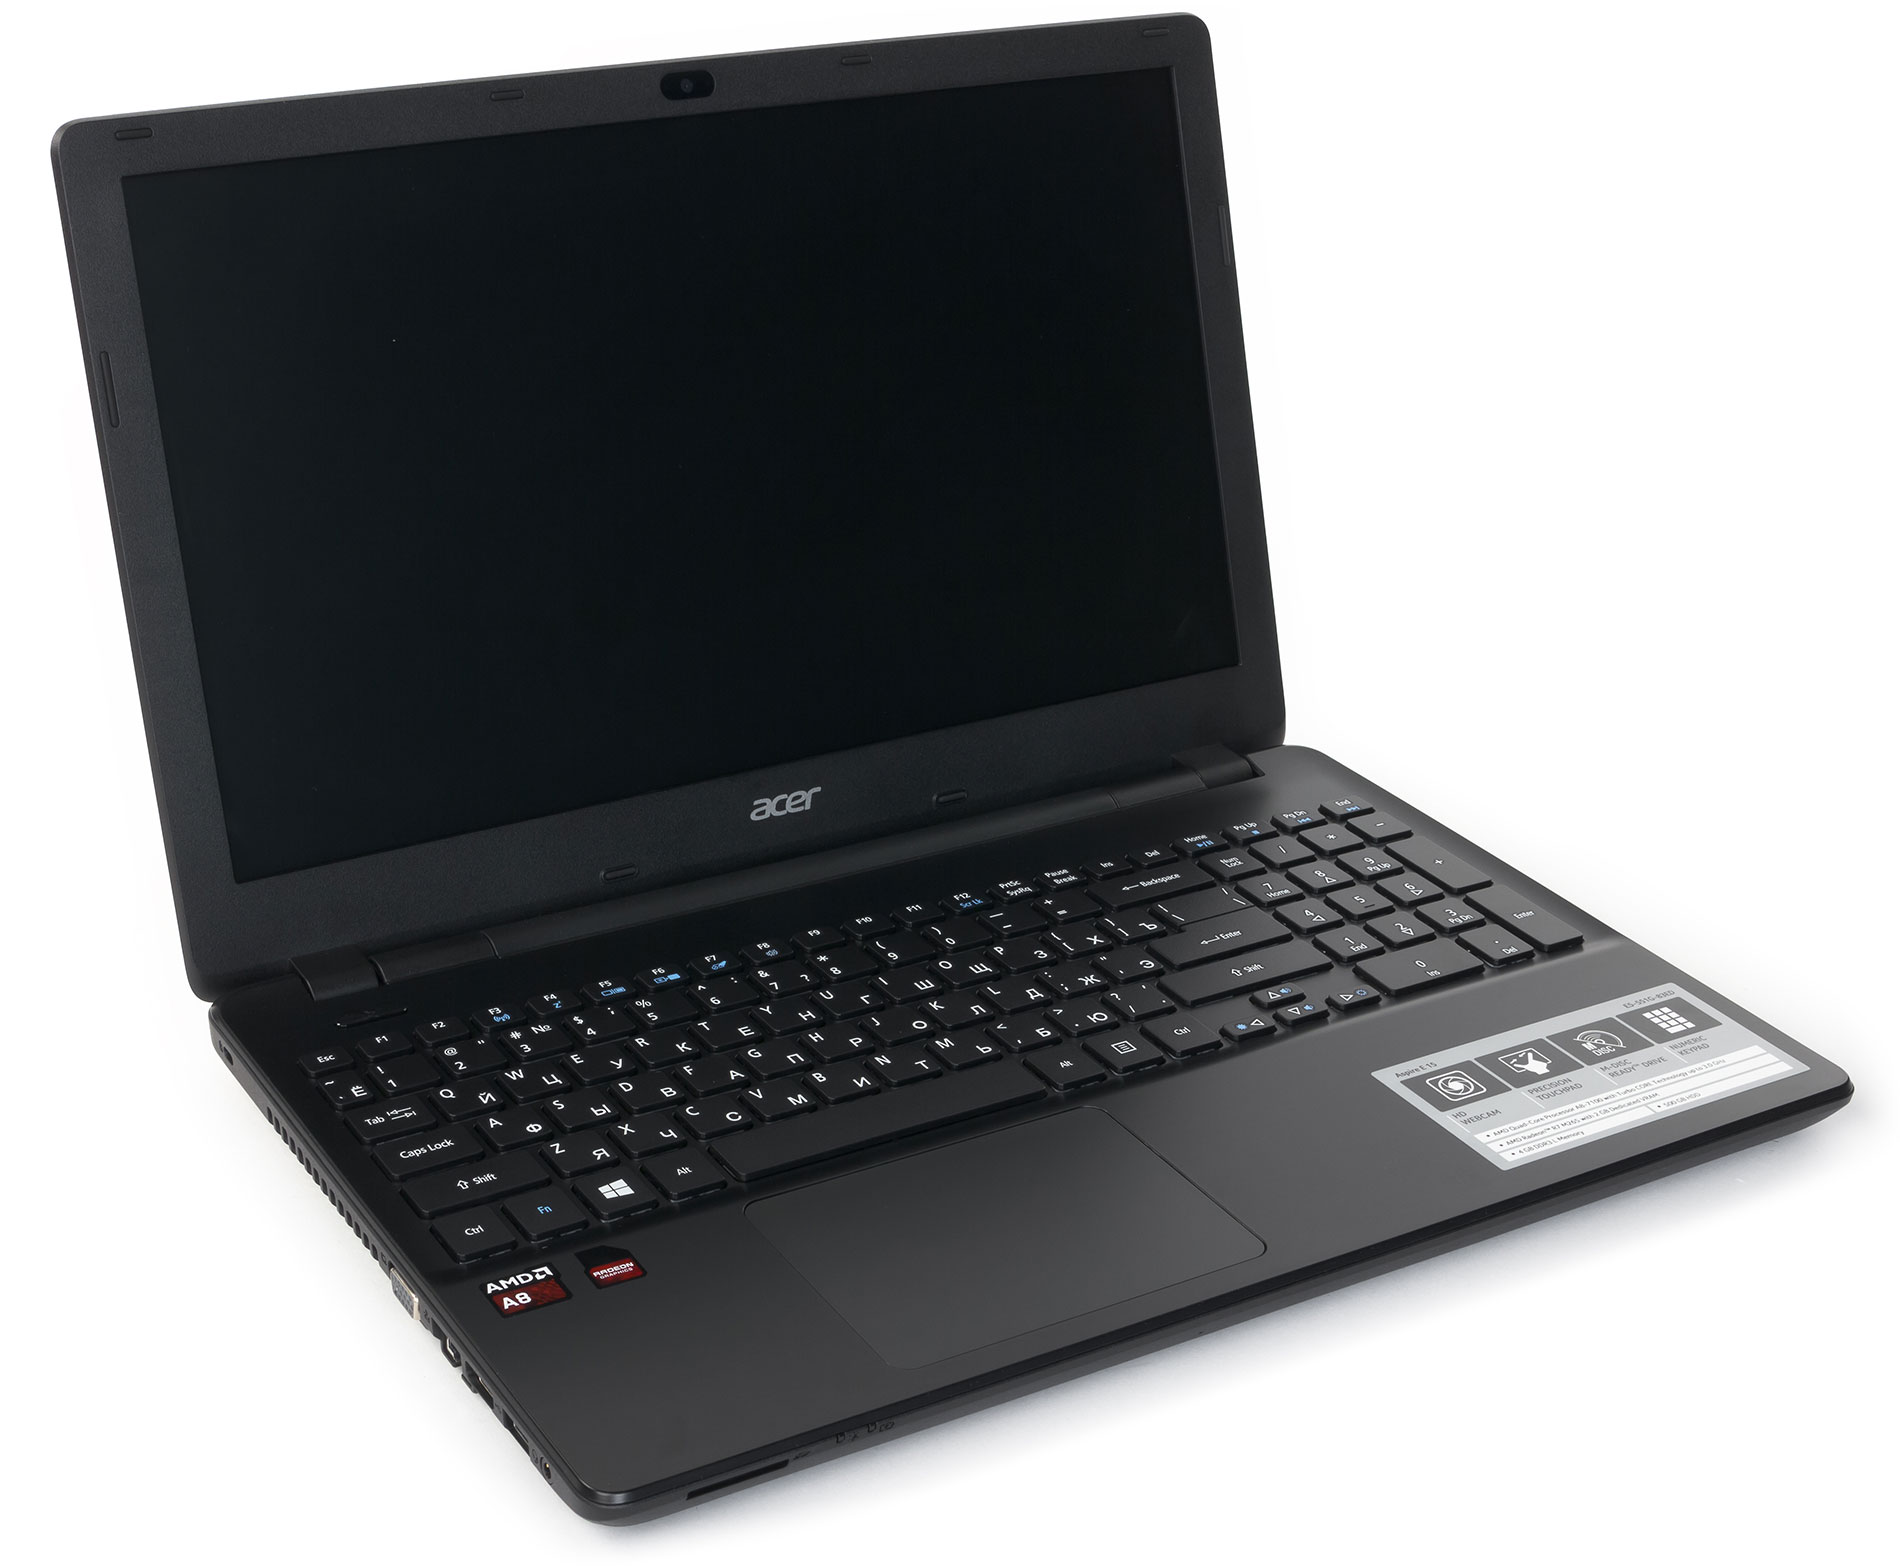 Ноутбук Acer Es 15 Цена